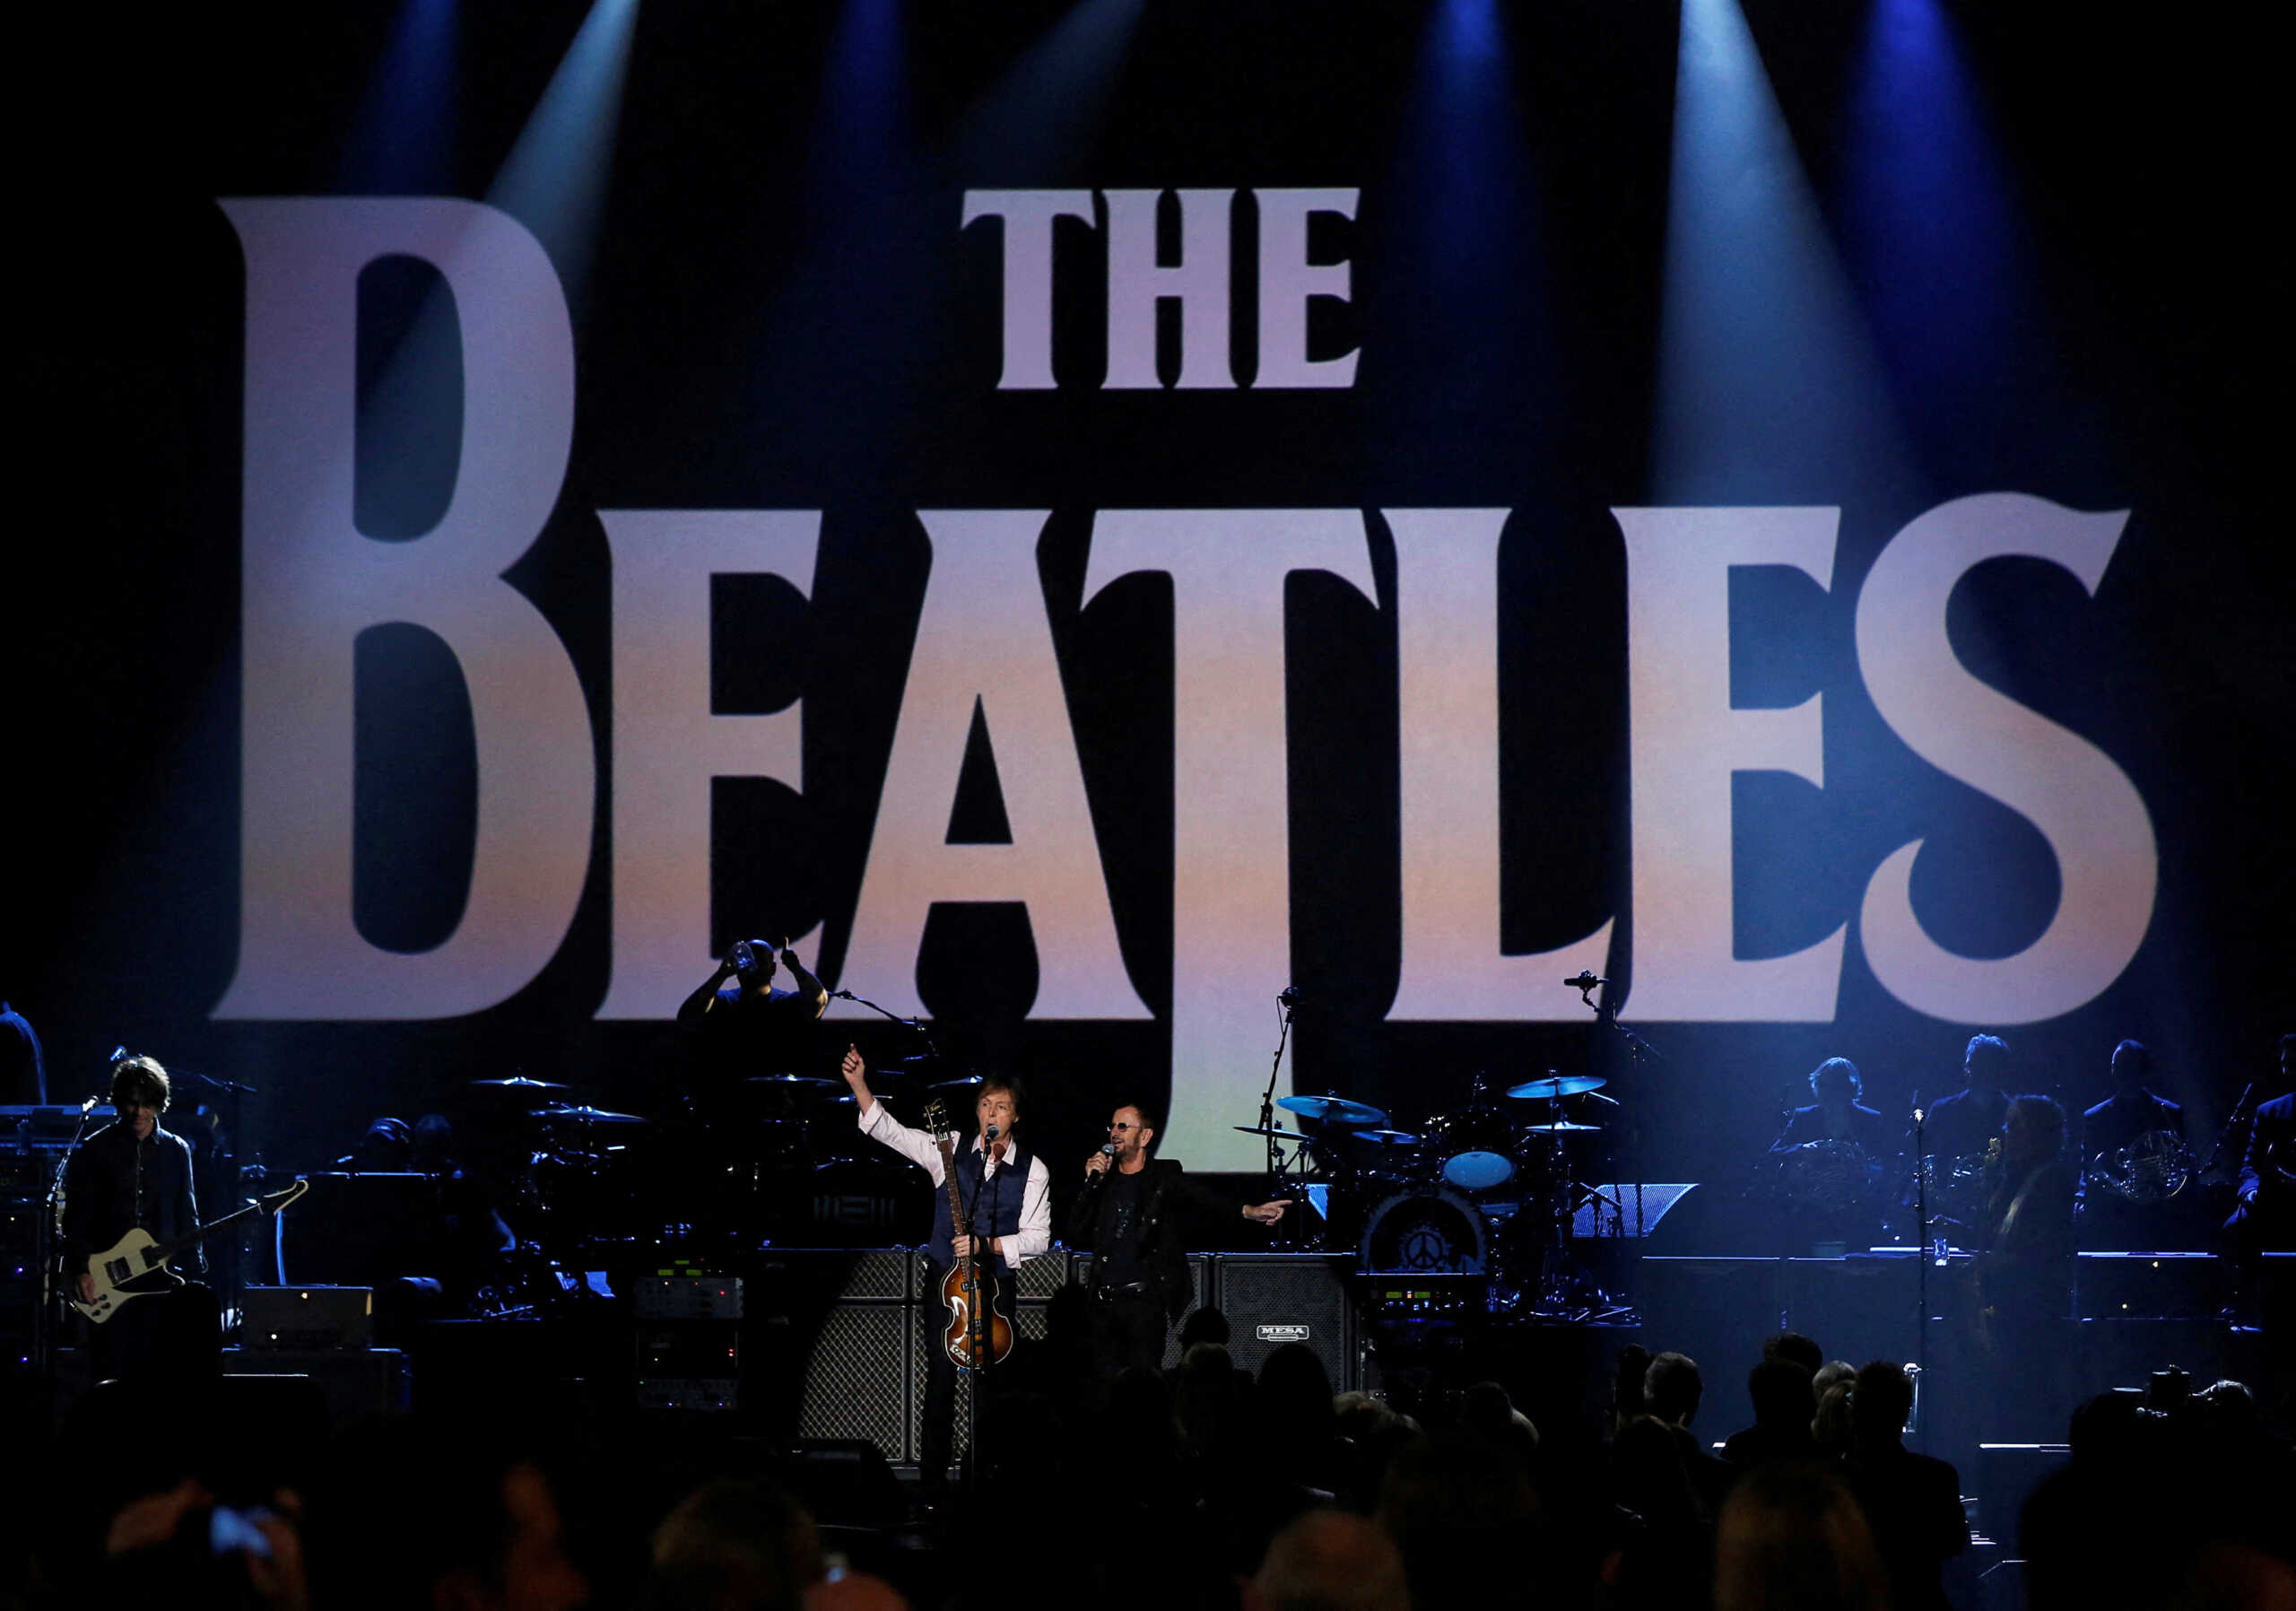 Beatles: Now and then – Αυτό είναι το νέο τους τραγούδι